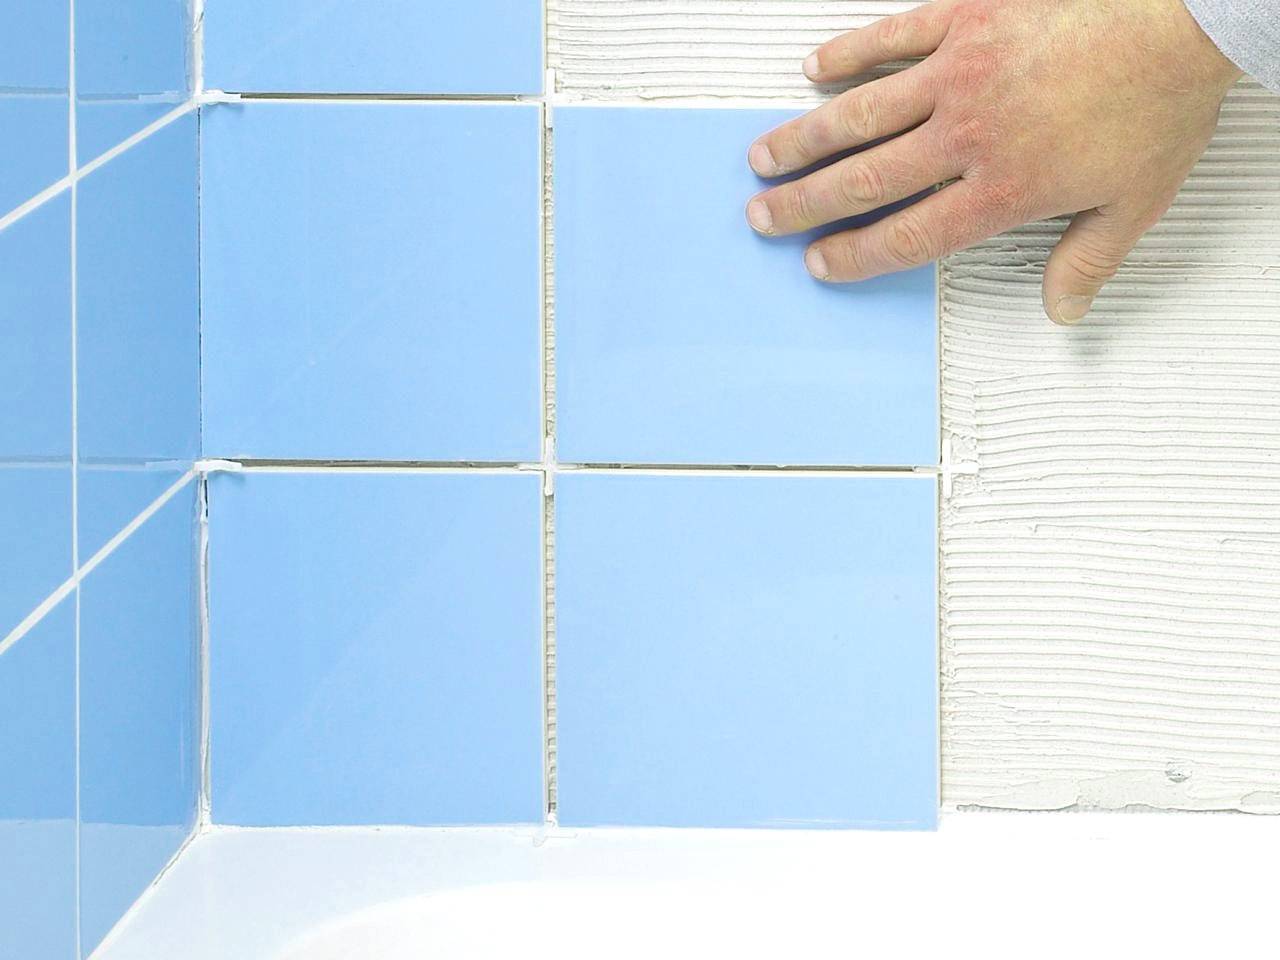 Как выбрать плитку для ванны - топ-5 брендов плитки + плюсы и минусы каждого